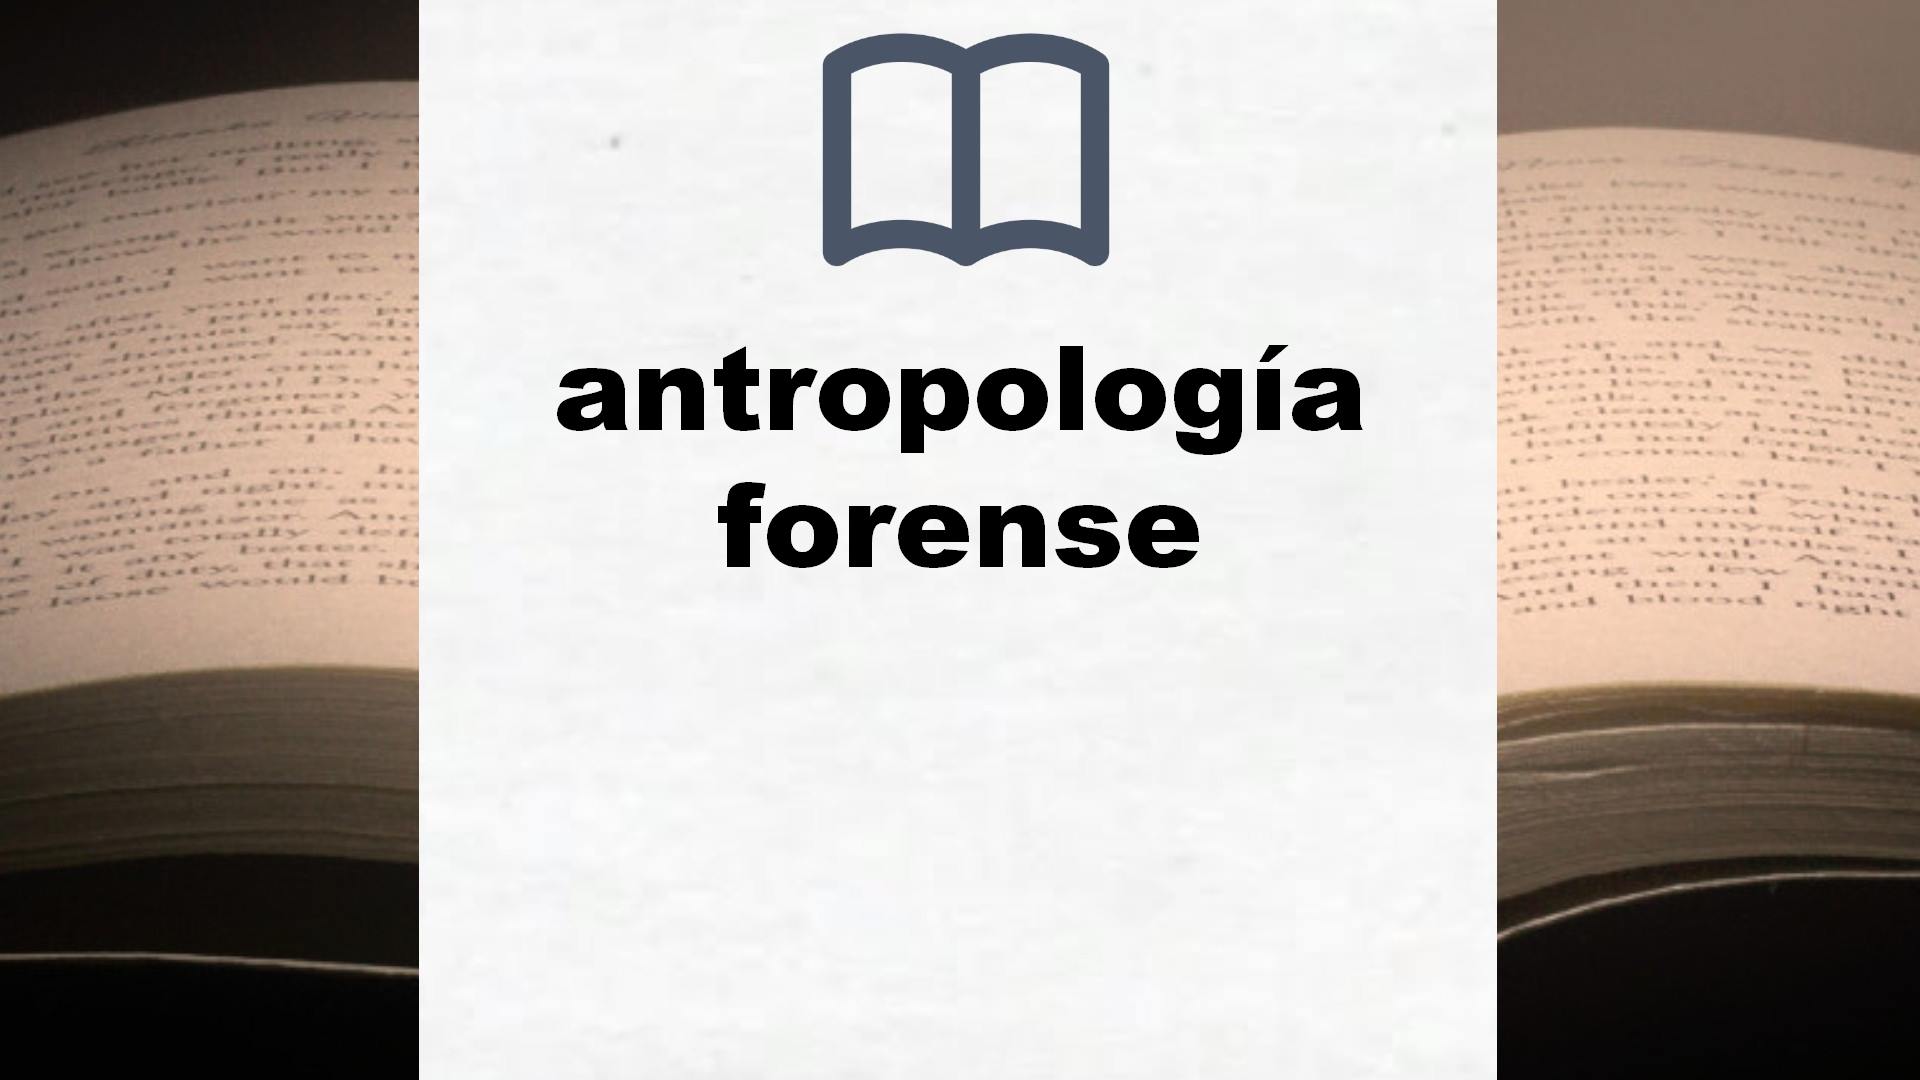 Libros sobre antropología forense